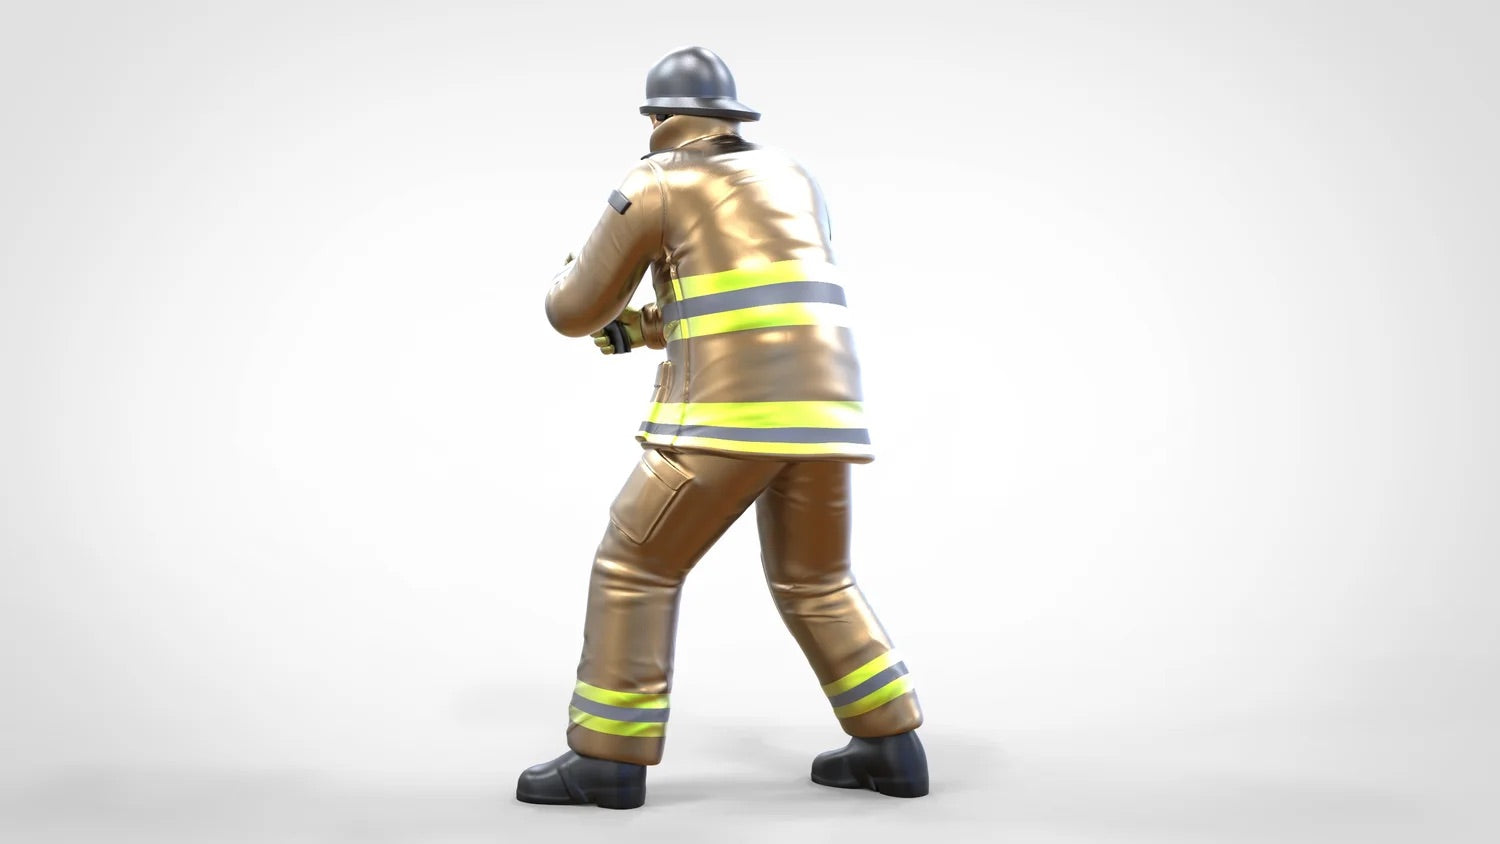 Produktfoto Diorama und Modellbau Miniatur Figur: Feuerwehrmann 1